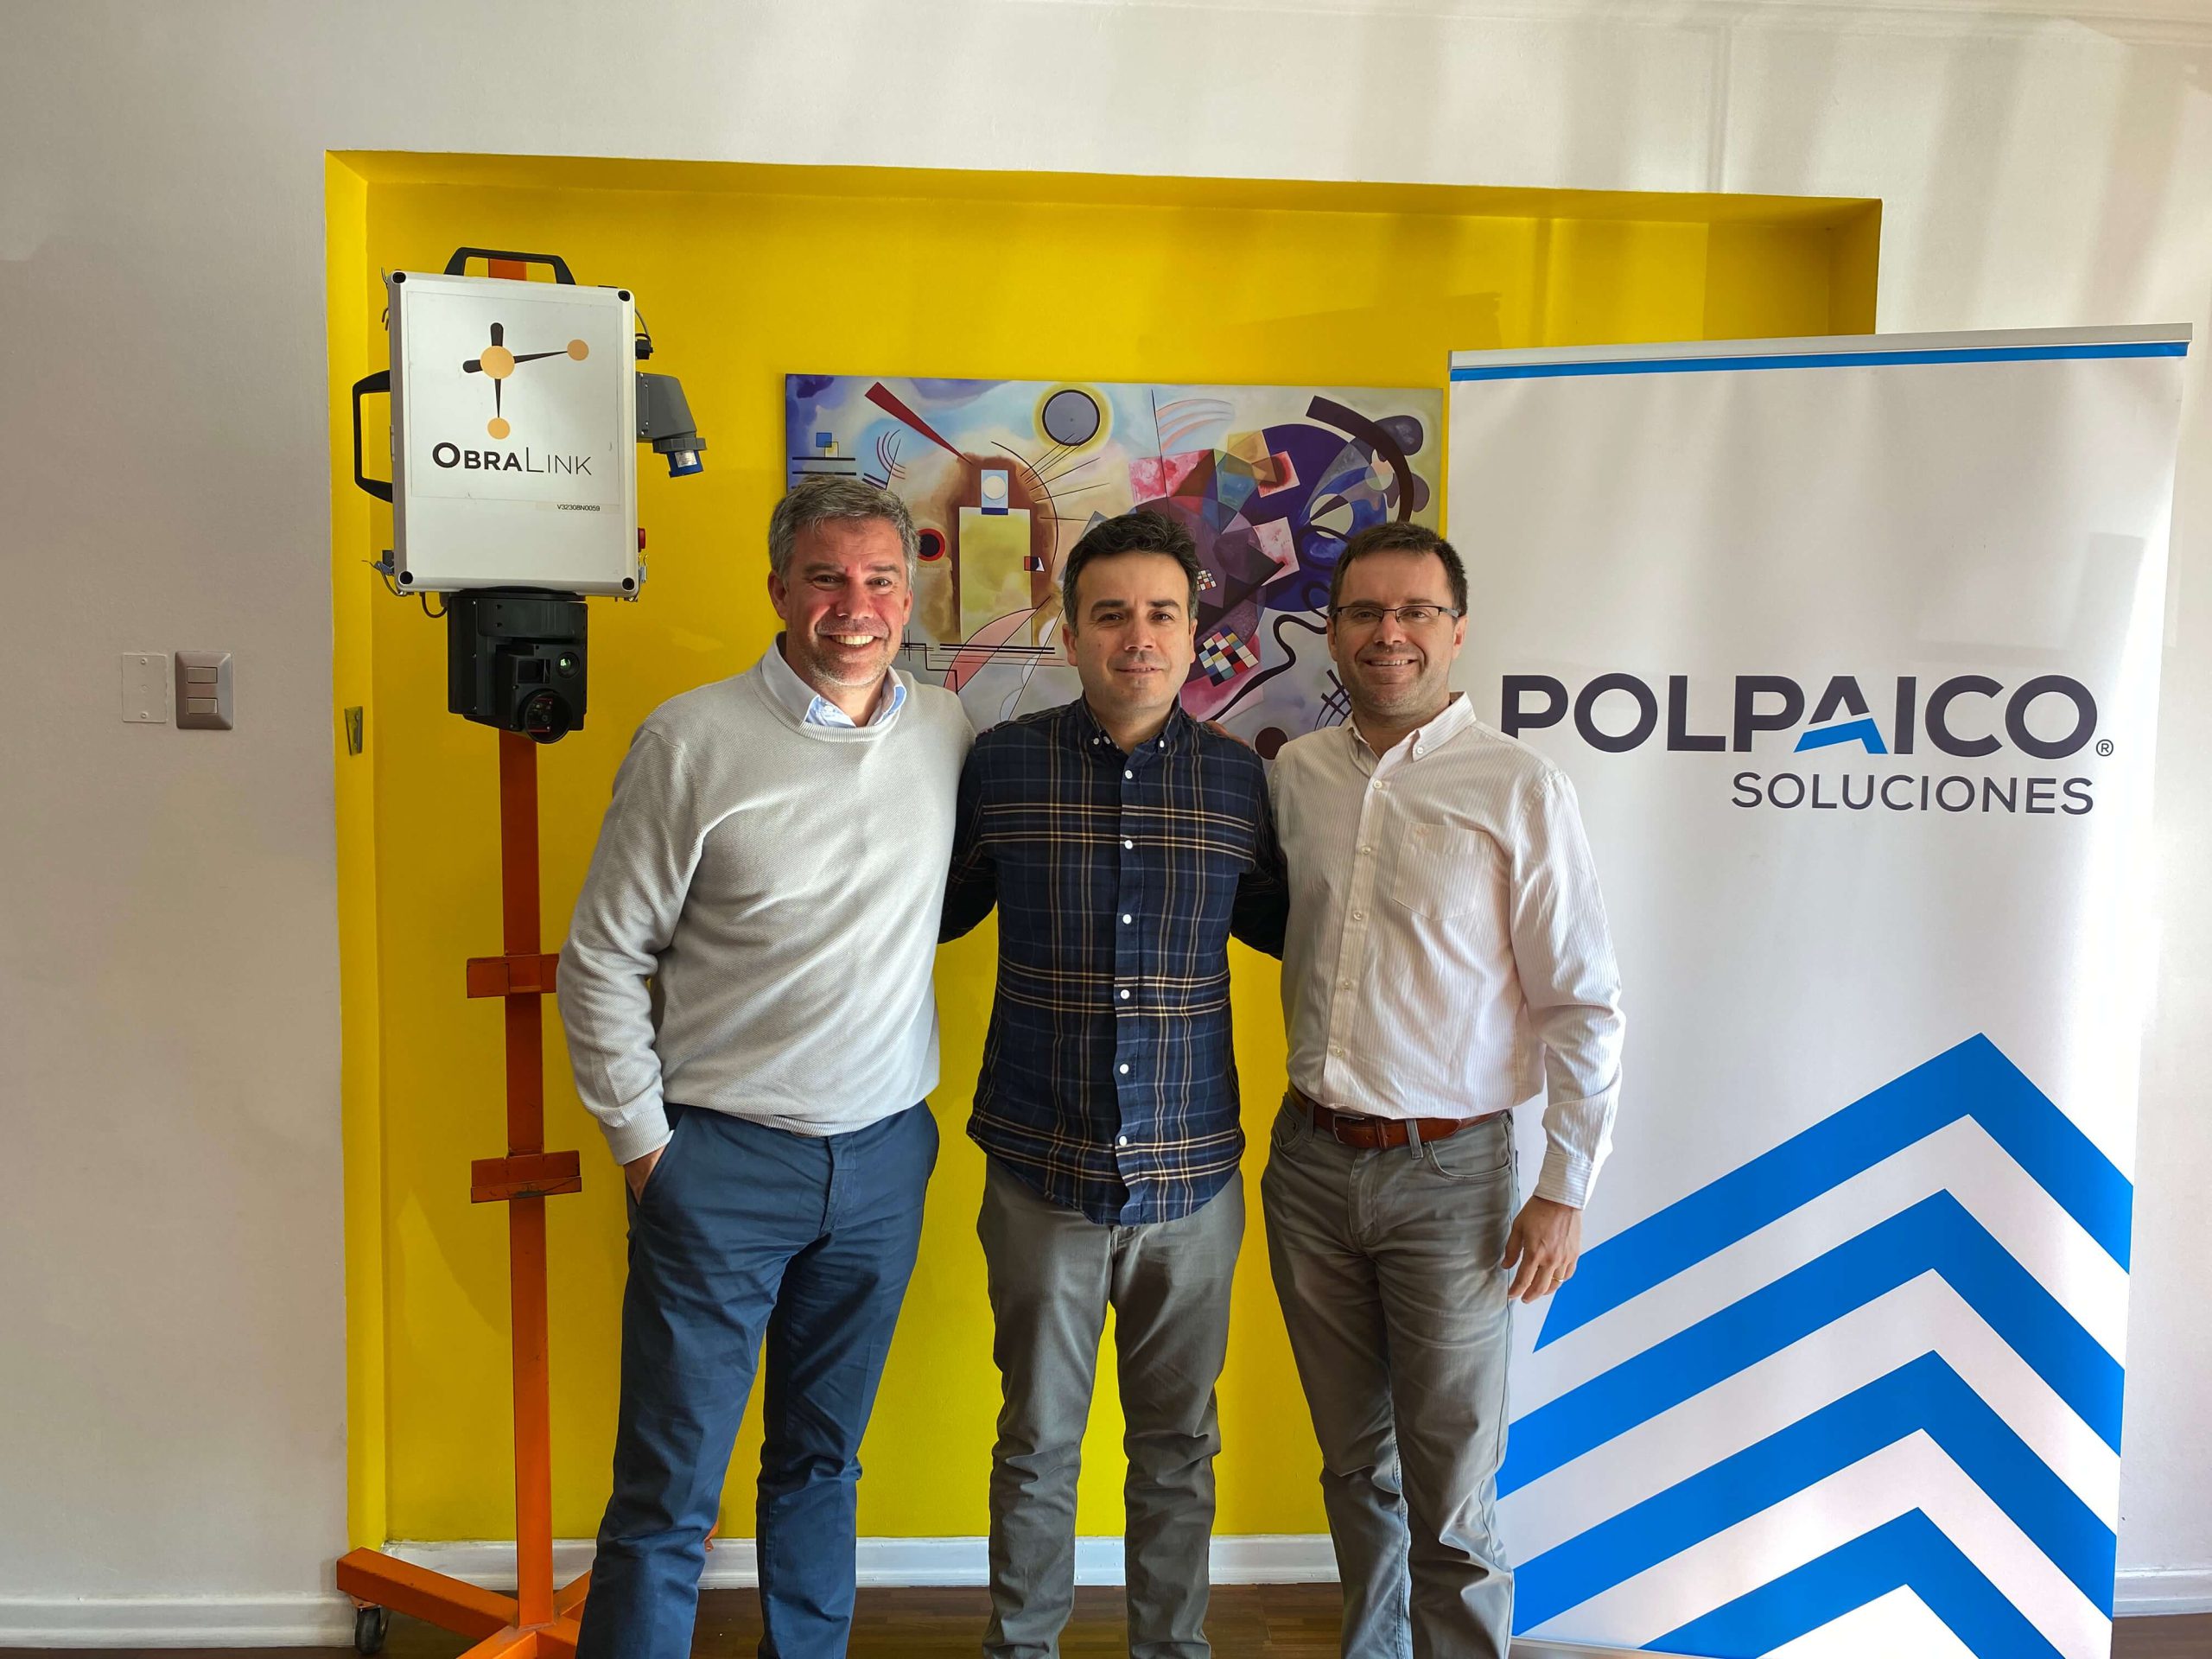 Polpaico Soluciones invierte en Startup ObraLink para incorporar tecnología innovadora en el monitoreo de proyectos de contrucción